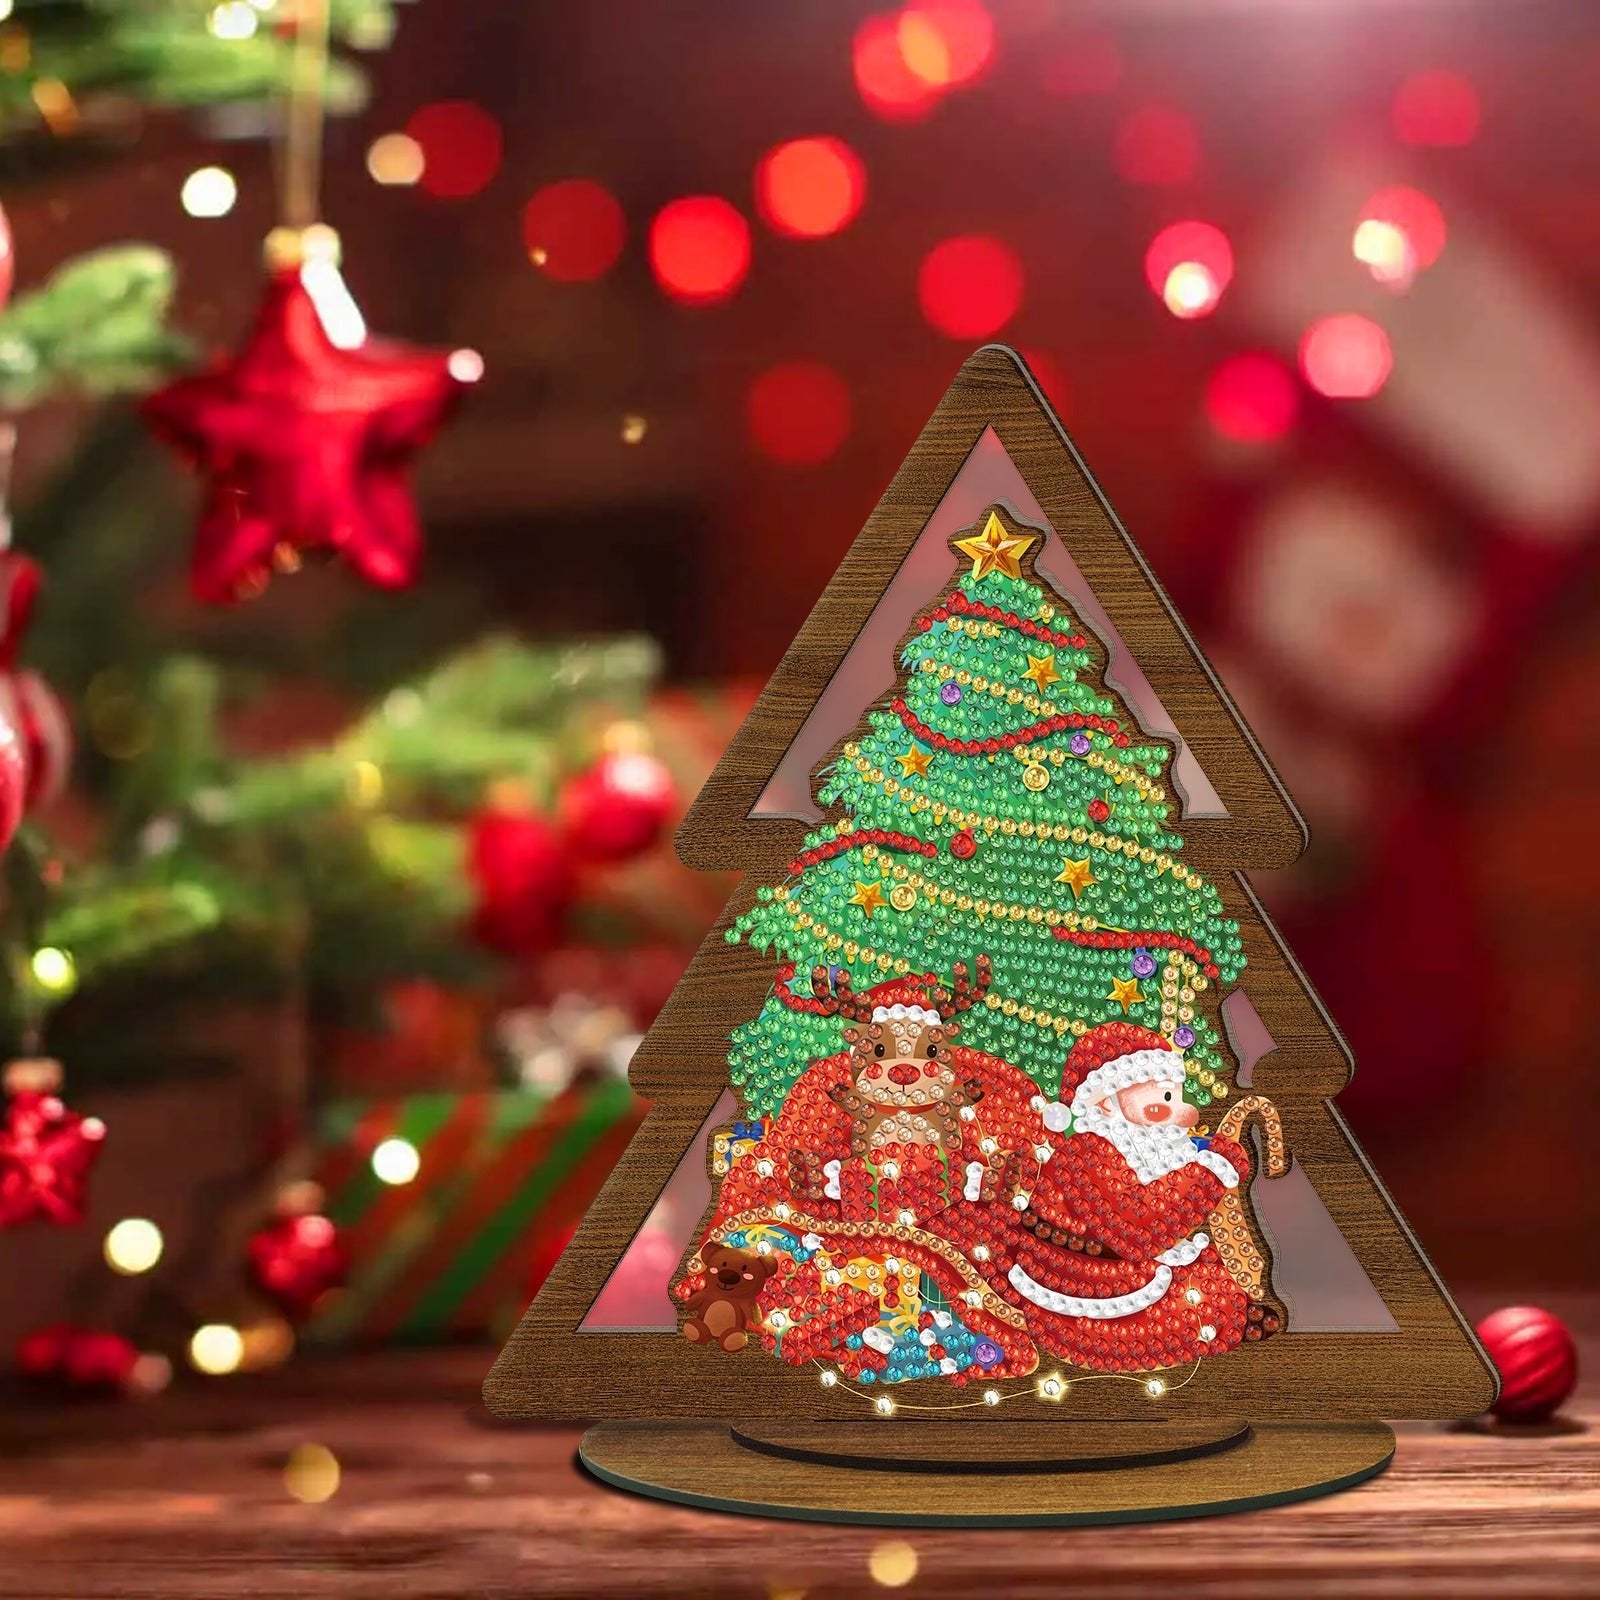 Un cuadro de diamantes 5D de Papá Noel preparando regalos en casa